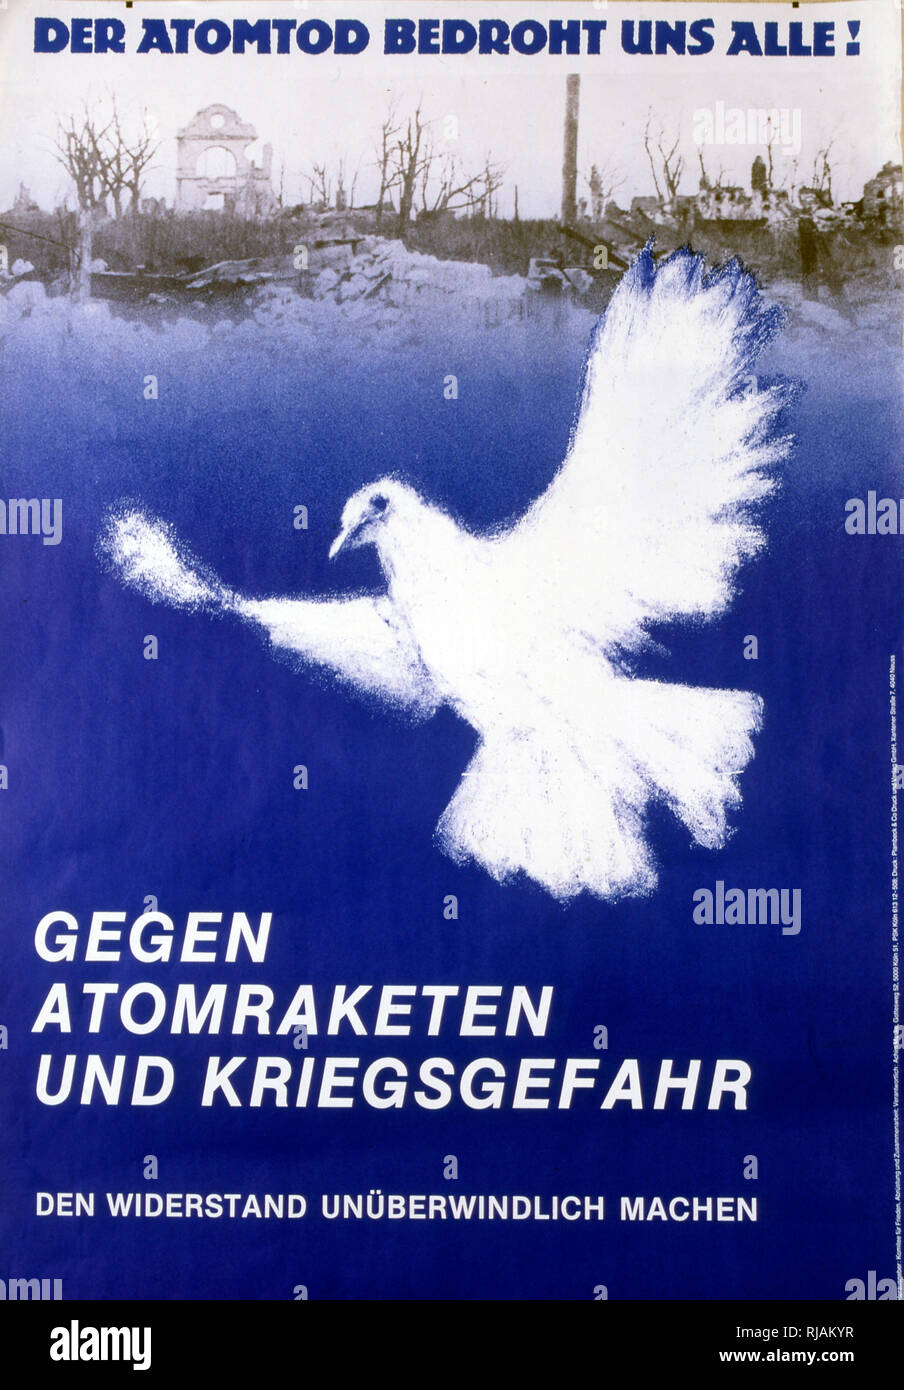 Der atomtod bedroht unse alle' 'atomico minaccia di morte tutti i' 1983, anti-guerra nucleare, poster pubblicato dal comitato tedesco per la libertà Foto Stock